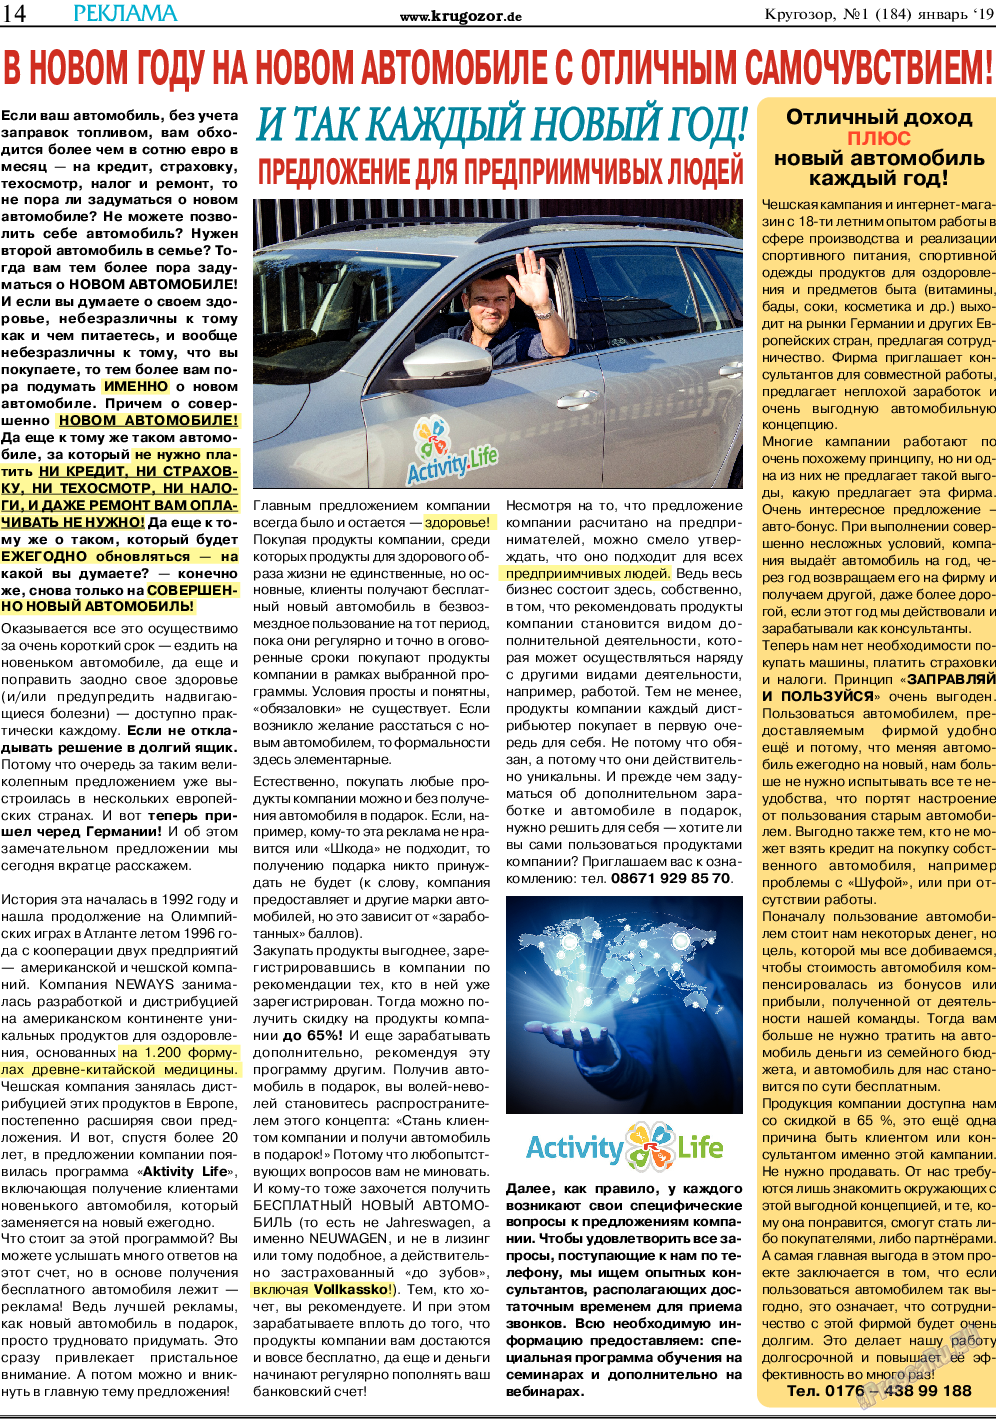 Кругозор, газета. 2019 №1 стр.14